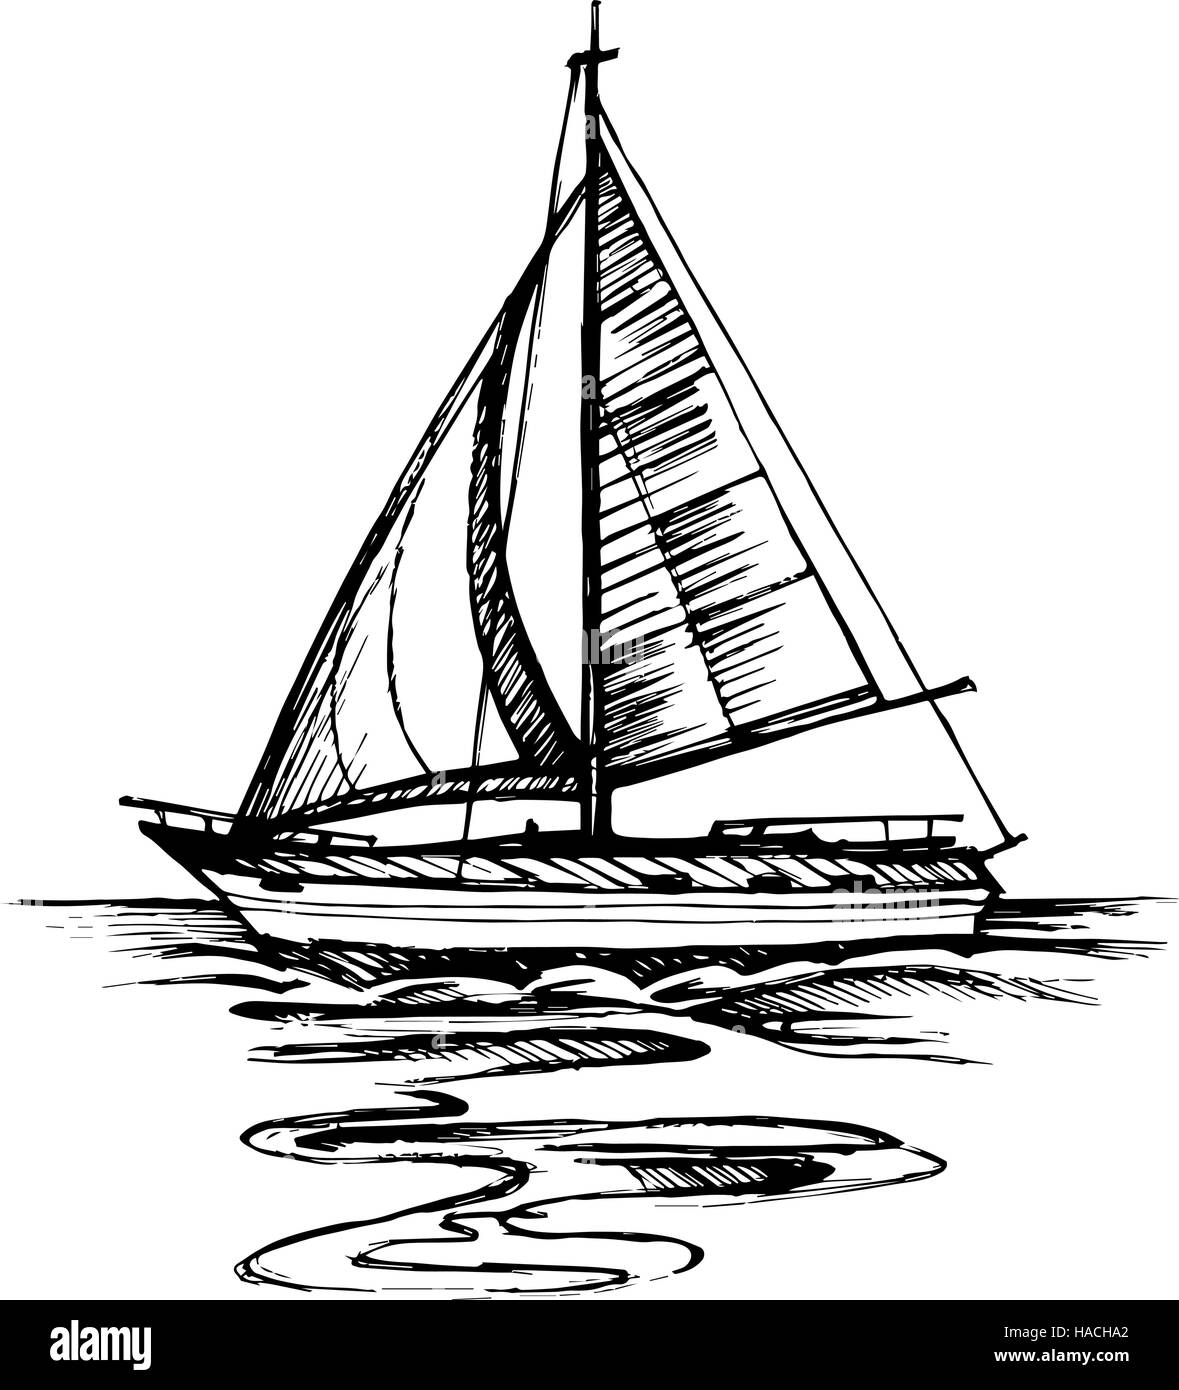 Карандашный рисунок яхт и парусников